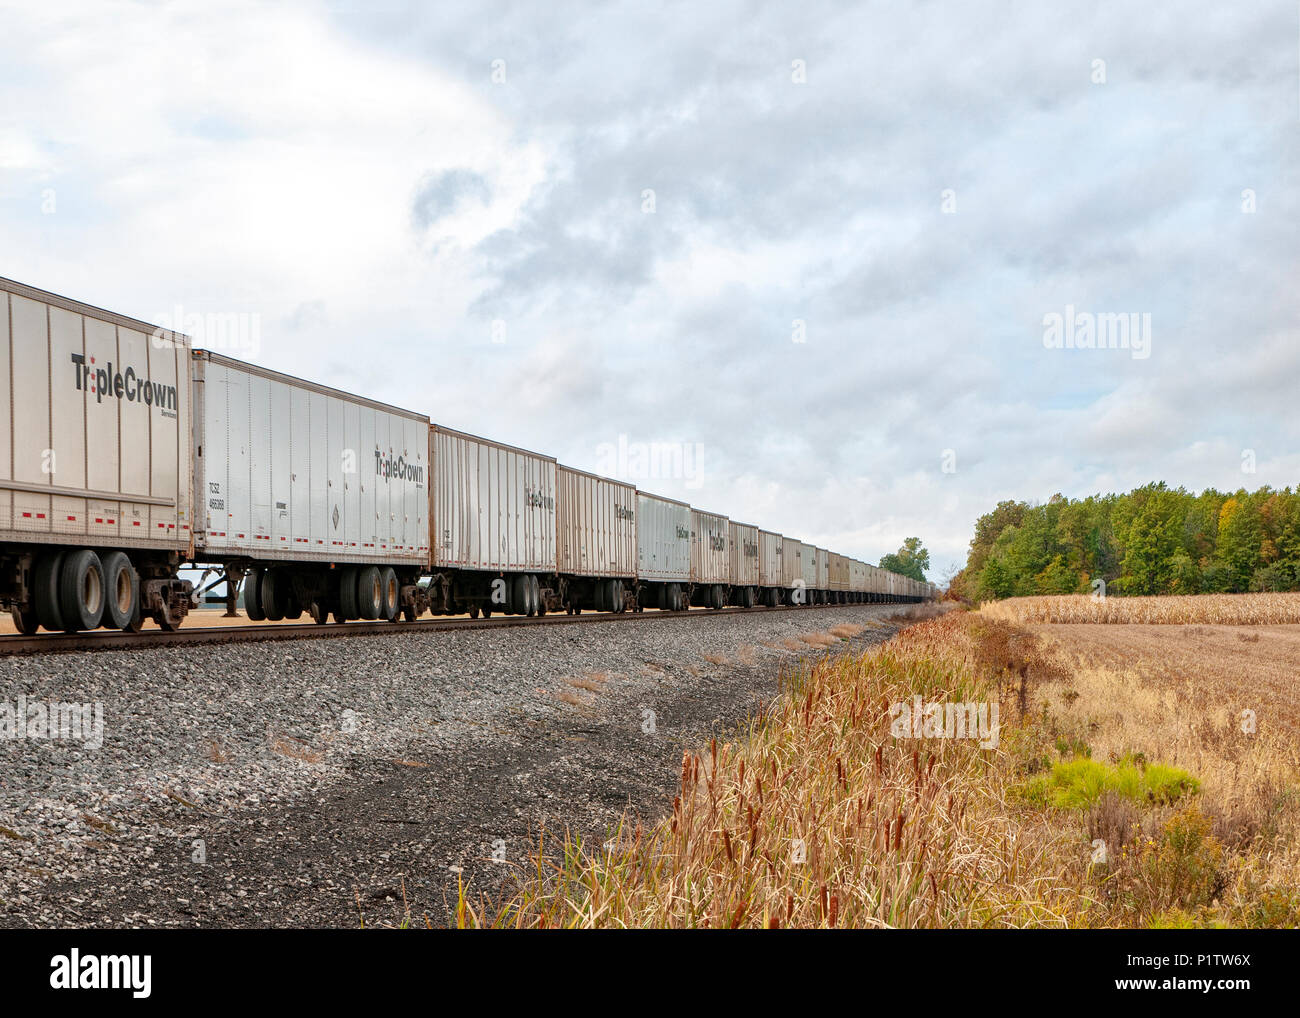 Merci ferroviario vetture con tripla corona sul lato delle vetture. Northwest Ohio Foto Stock